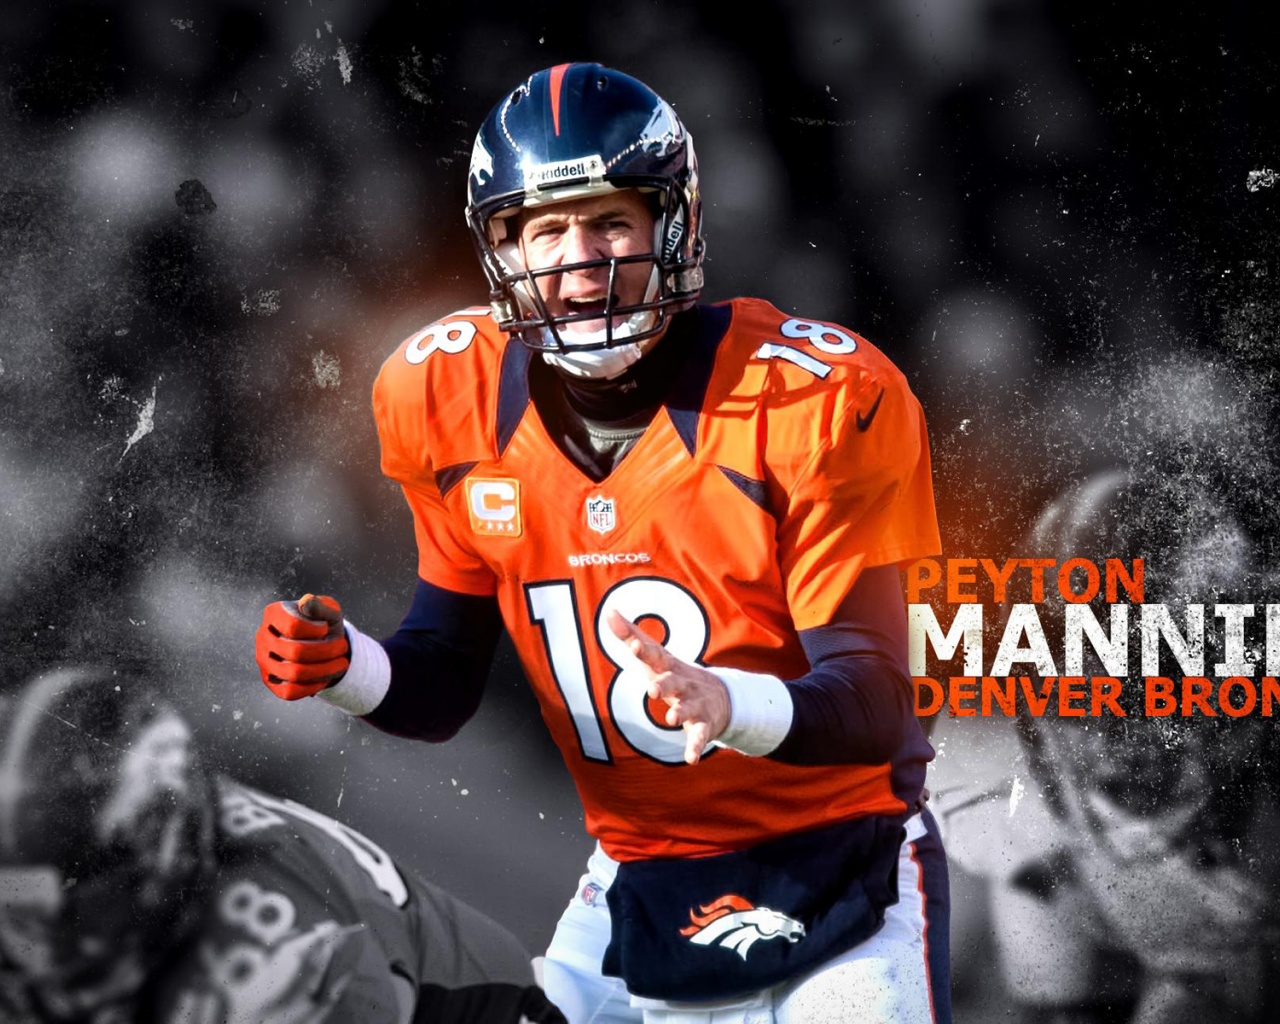 Peyton Manning - Denver Broncos